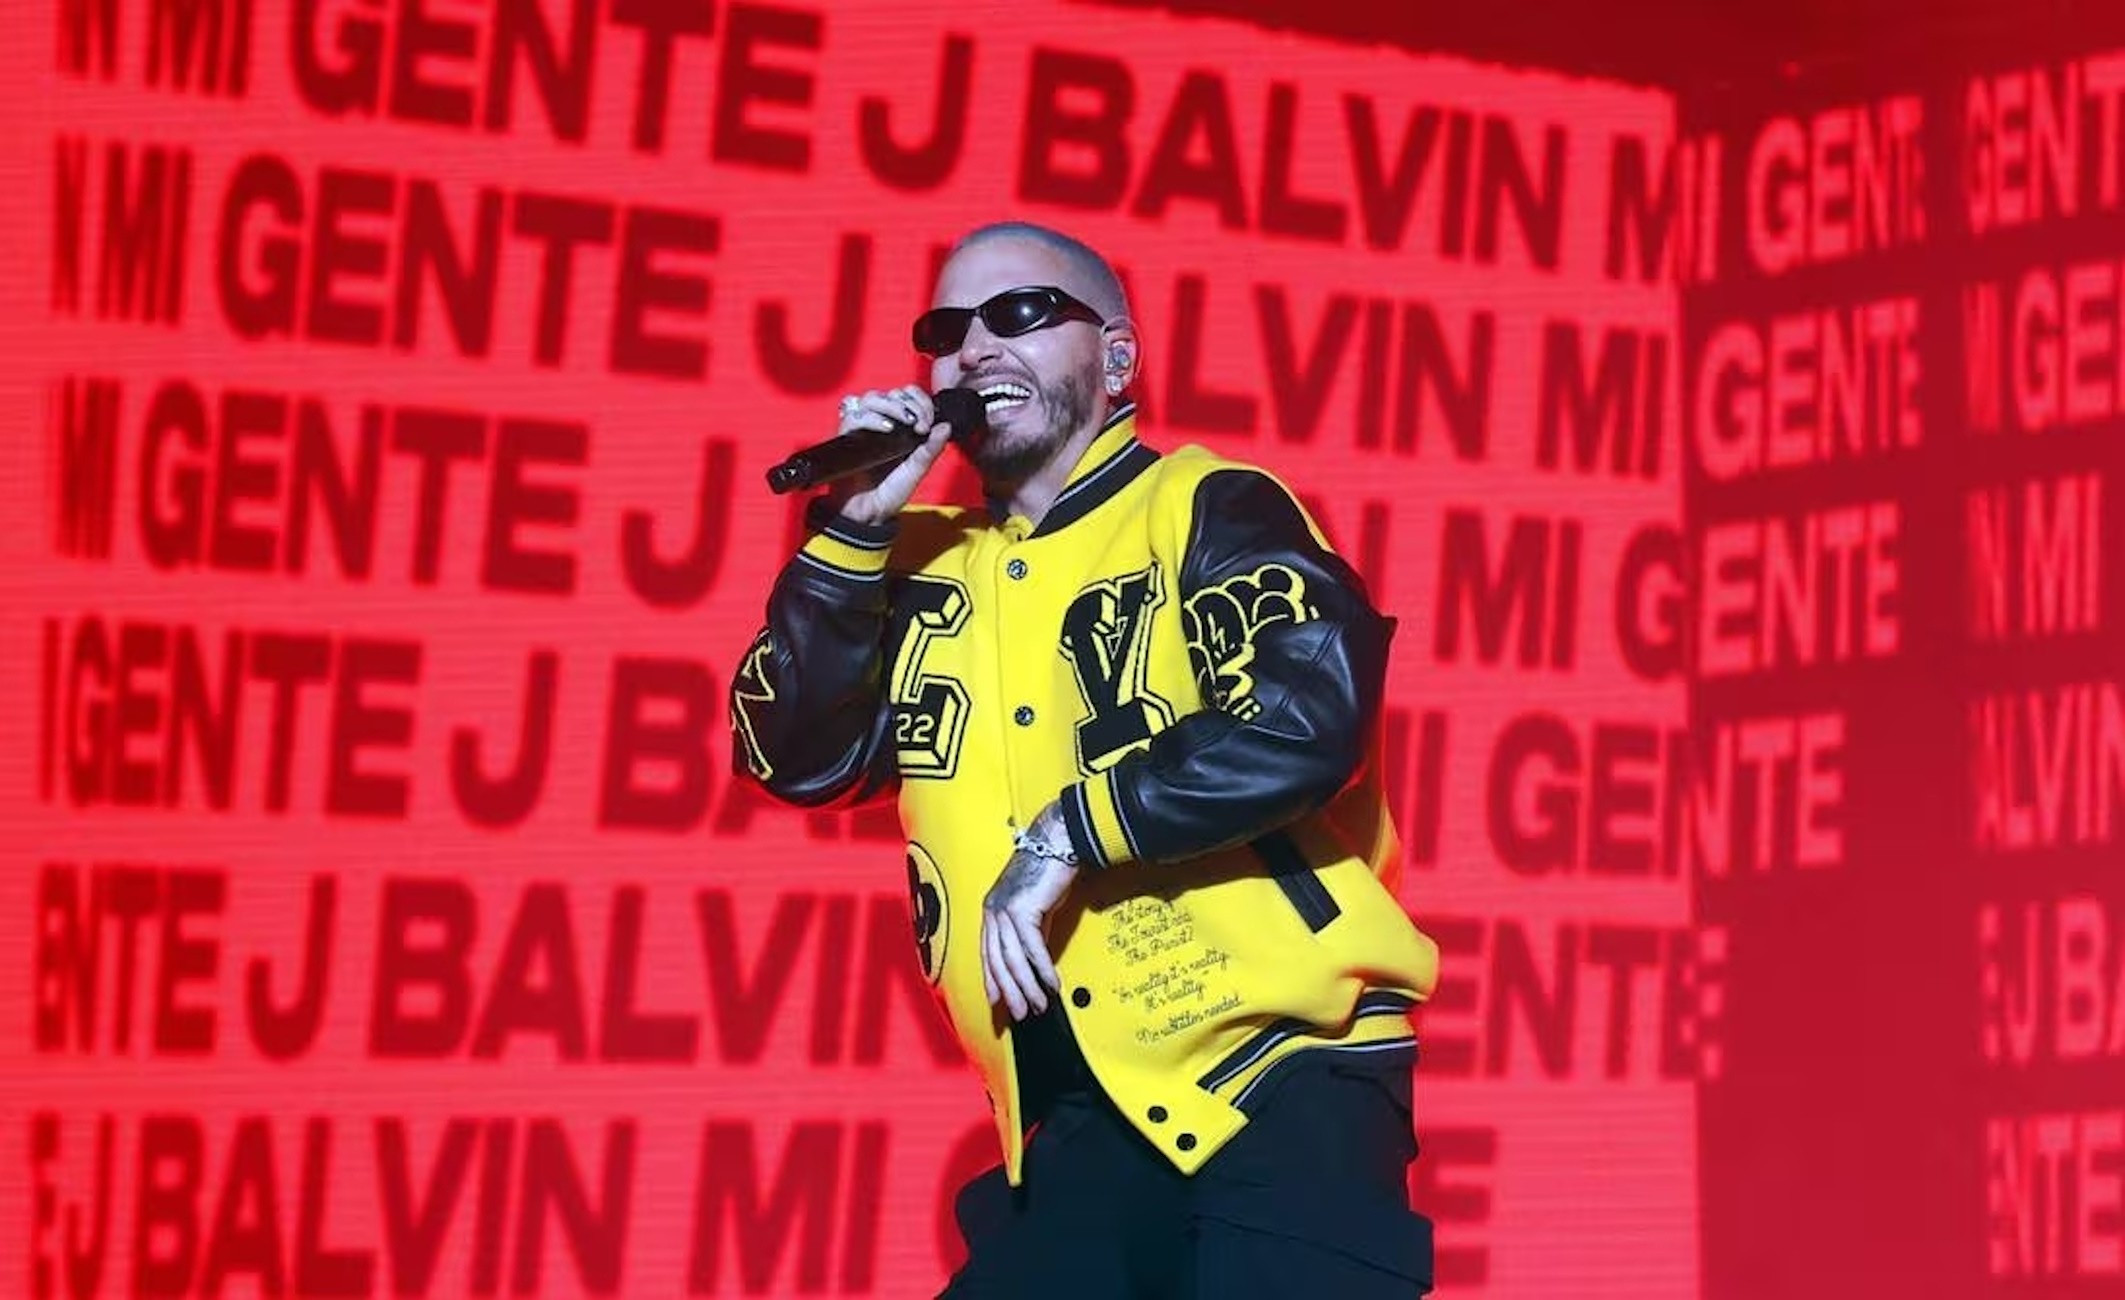 J Balvin actuarà al Palau Olímpic de Badalona el proper maig